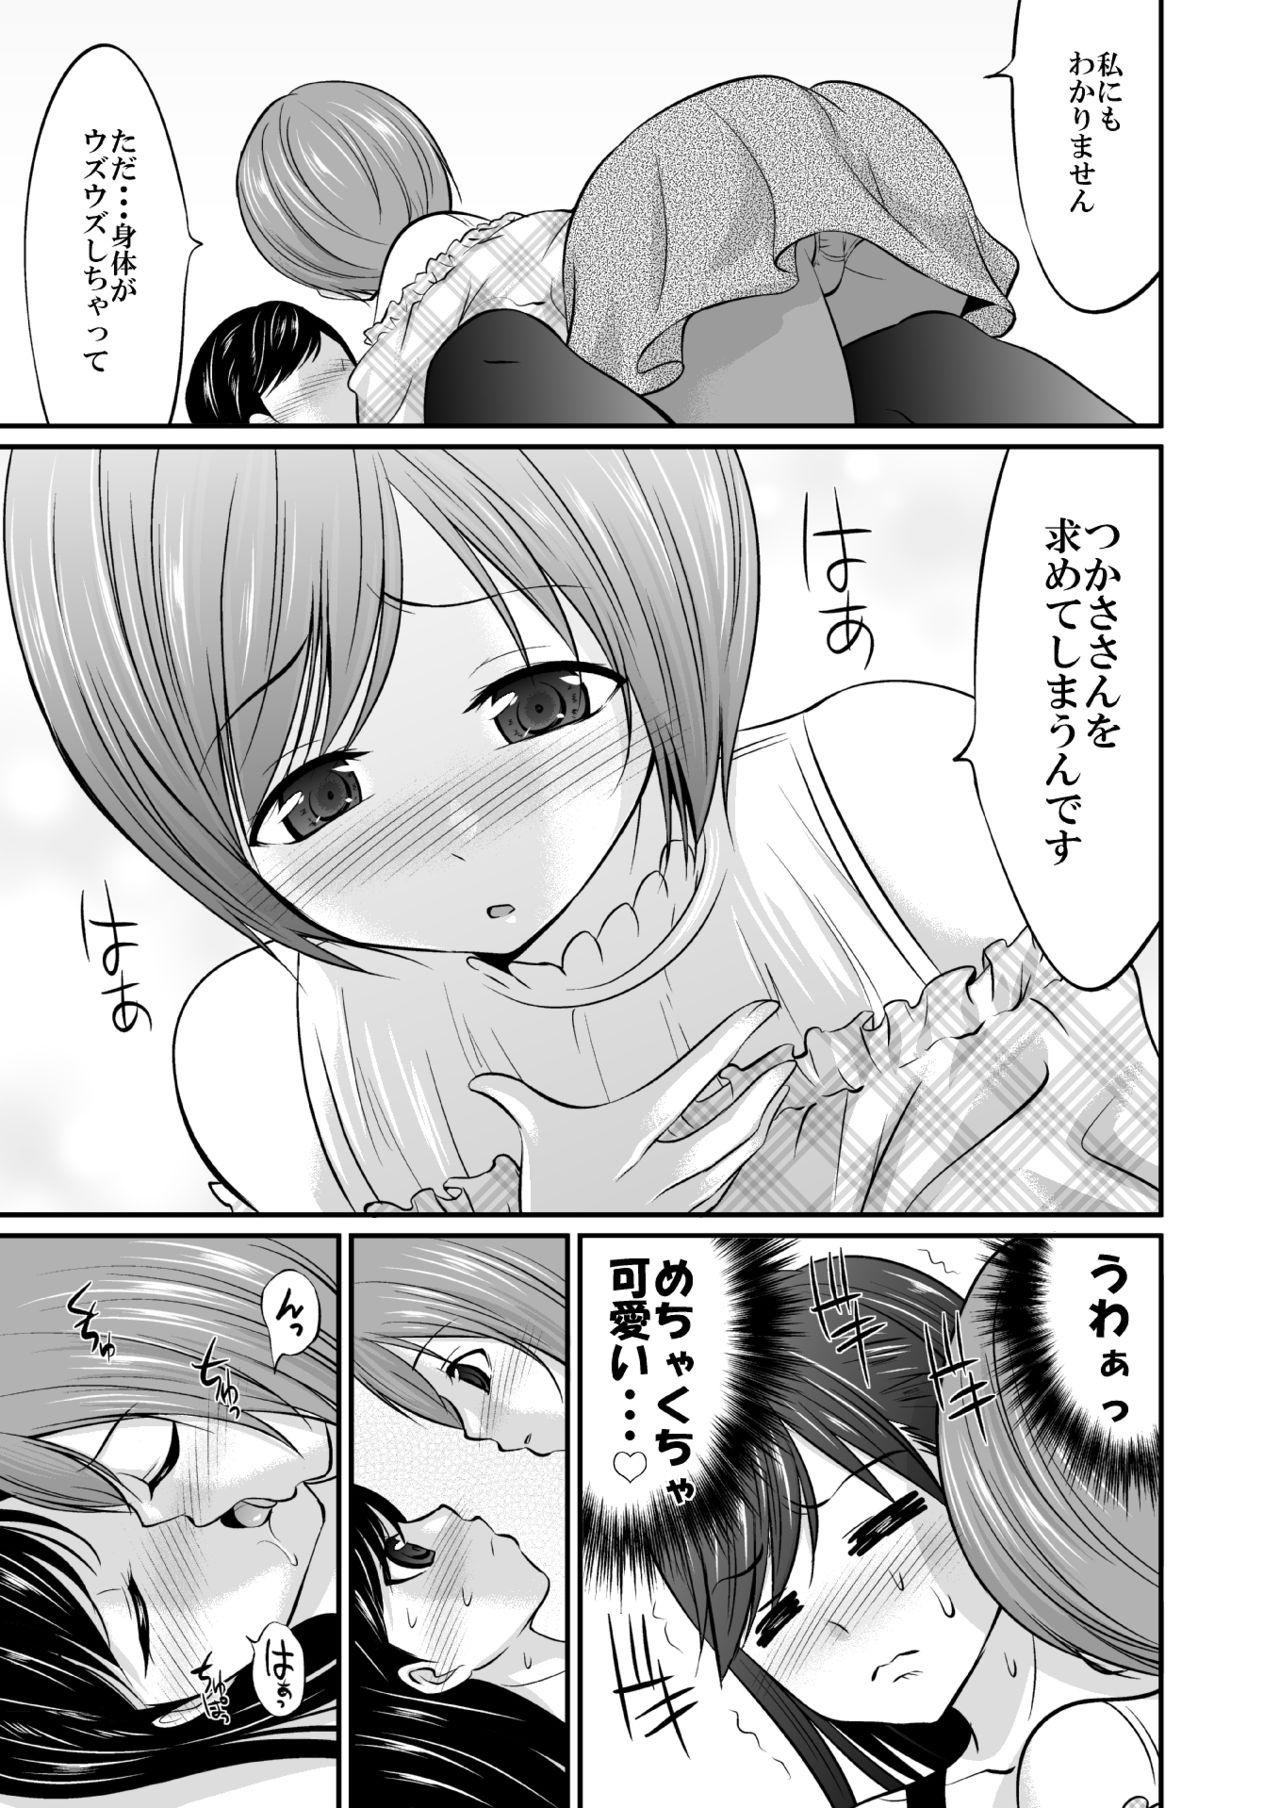 Pregnant Saitei de Saikou na Jikan - Kaitou sentai lupinranger vs keisatsu sentai patranger Webcams - Page 4